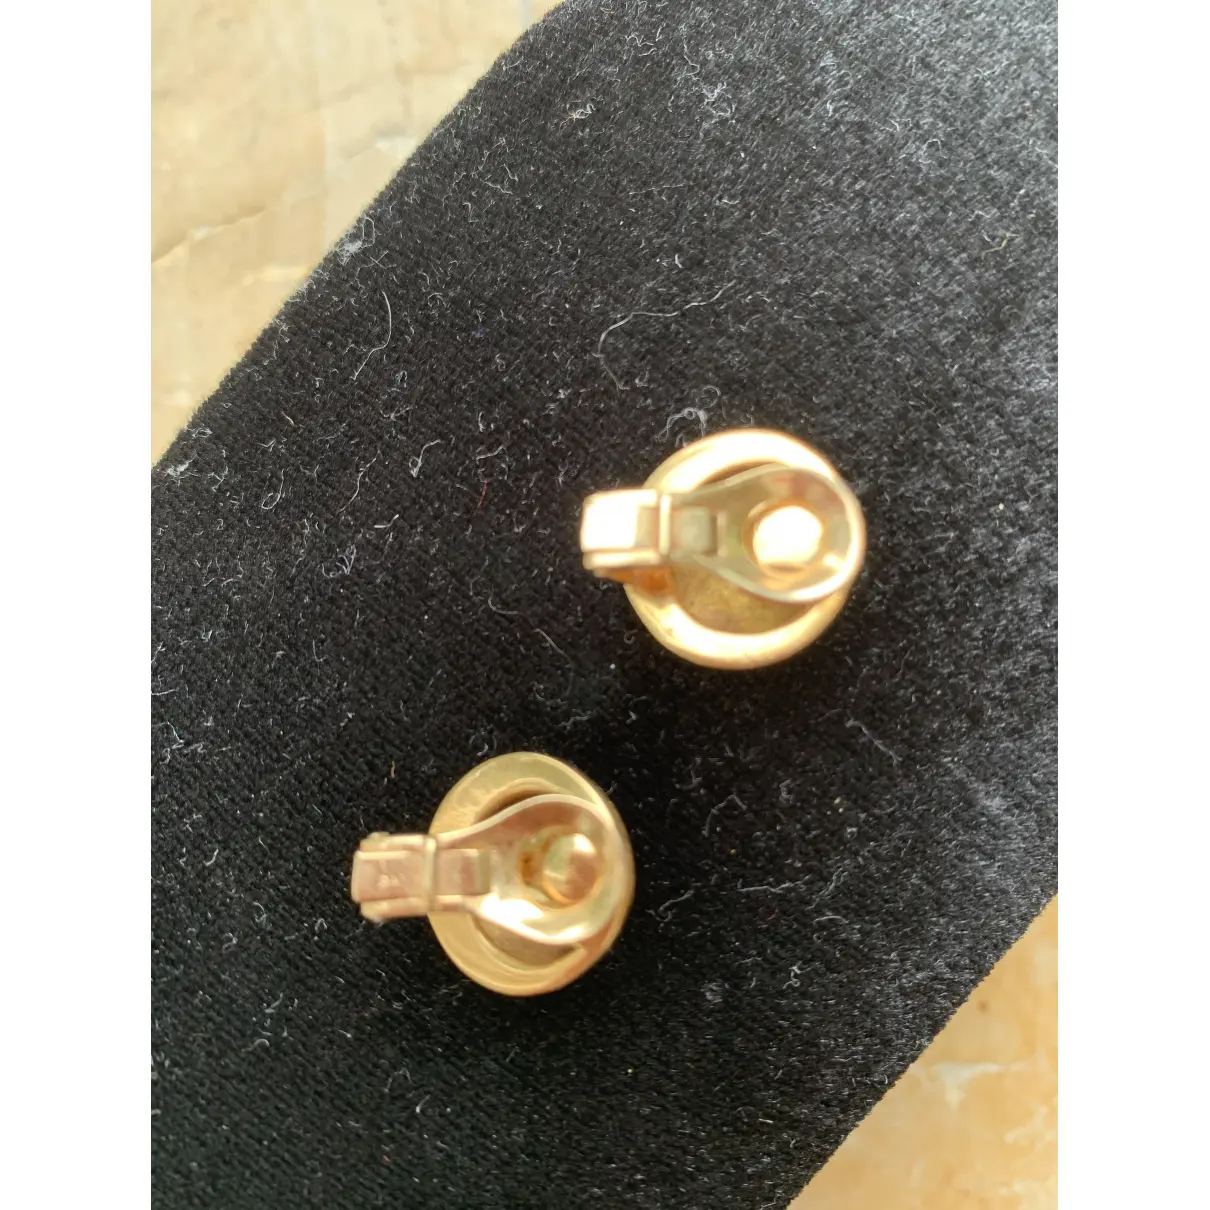 Buy Van Cleef & Arpels Yellow gold earrings online